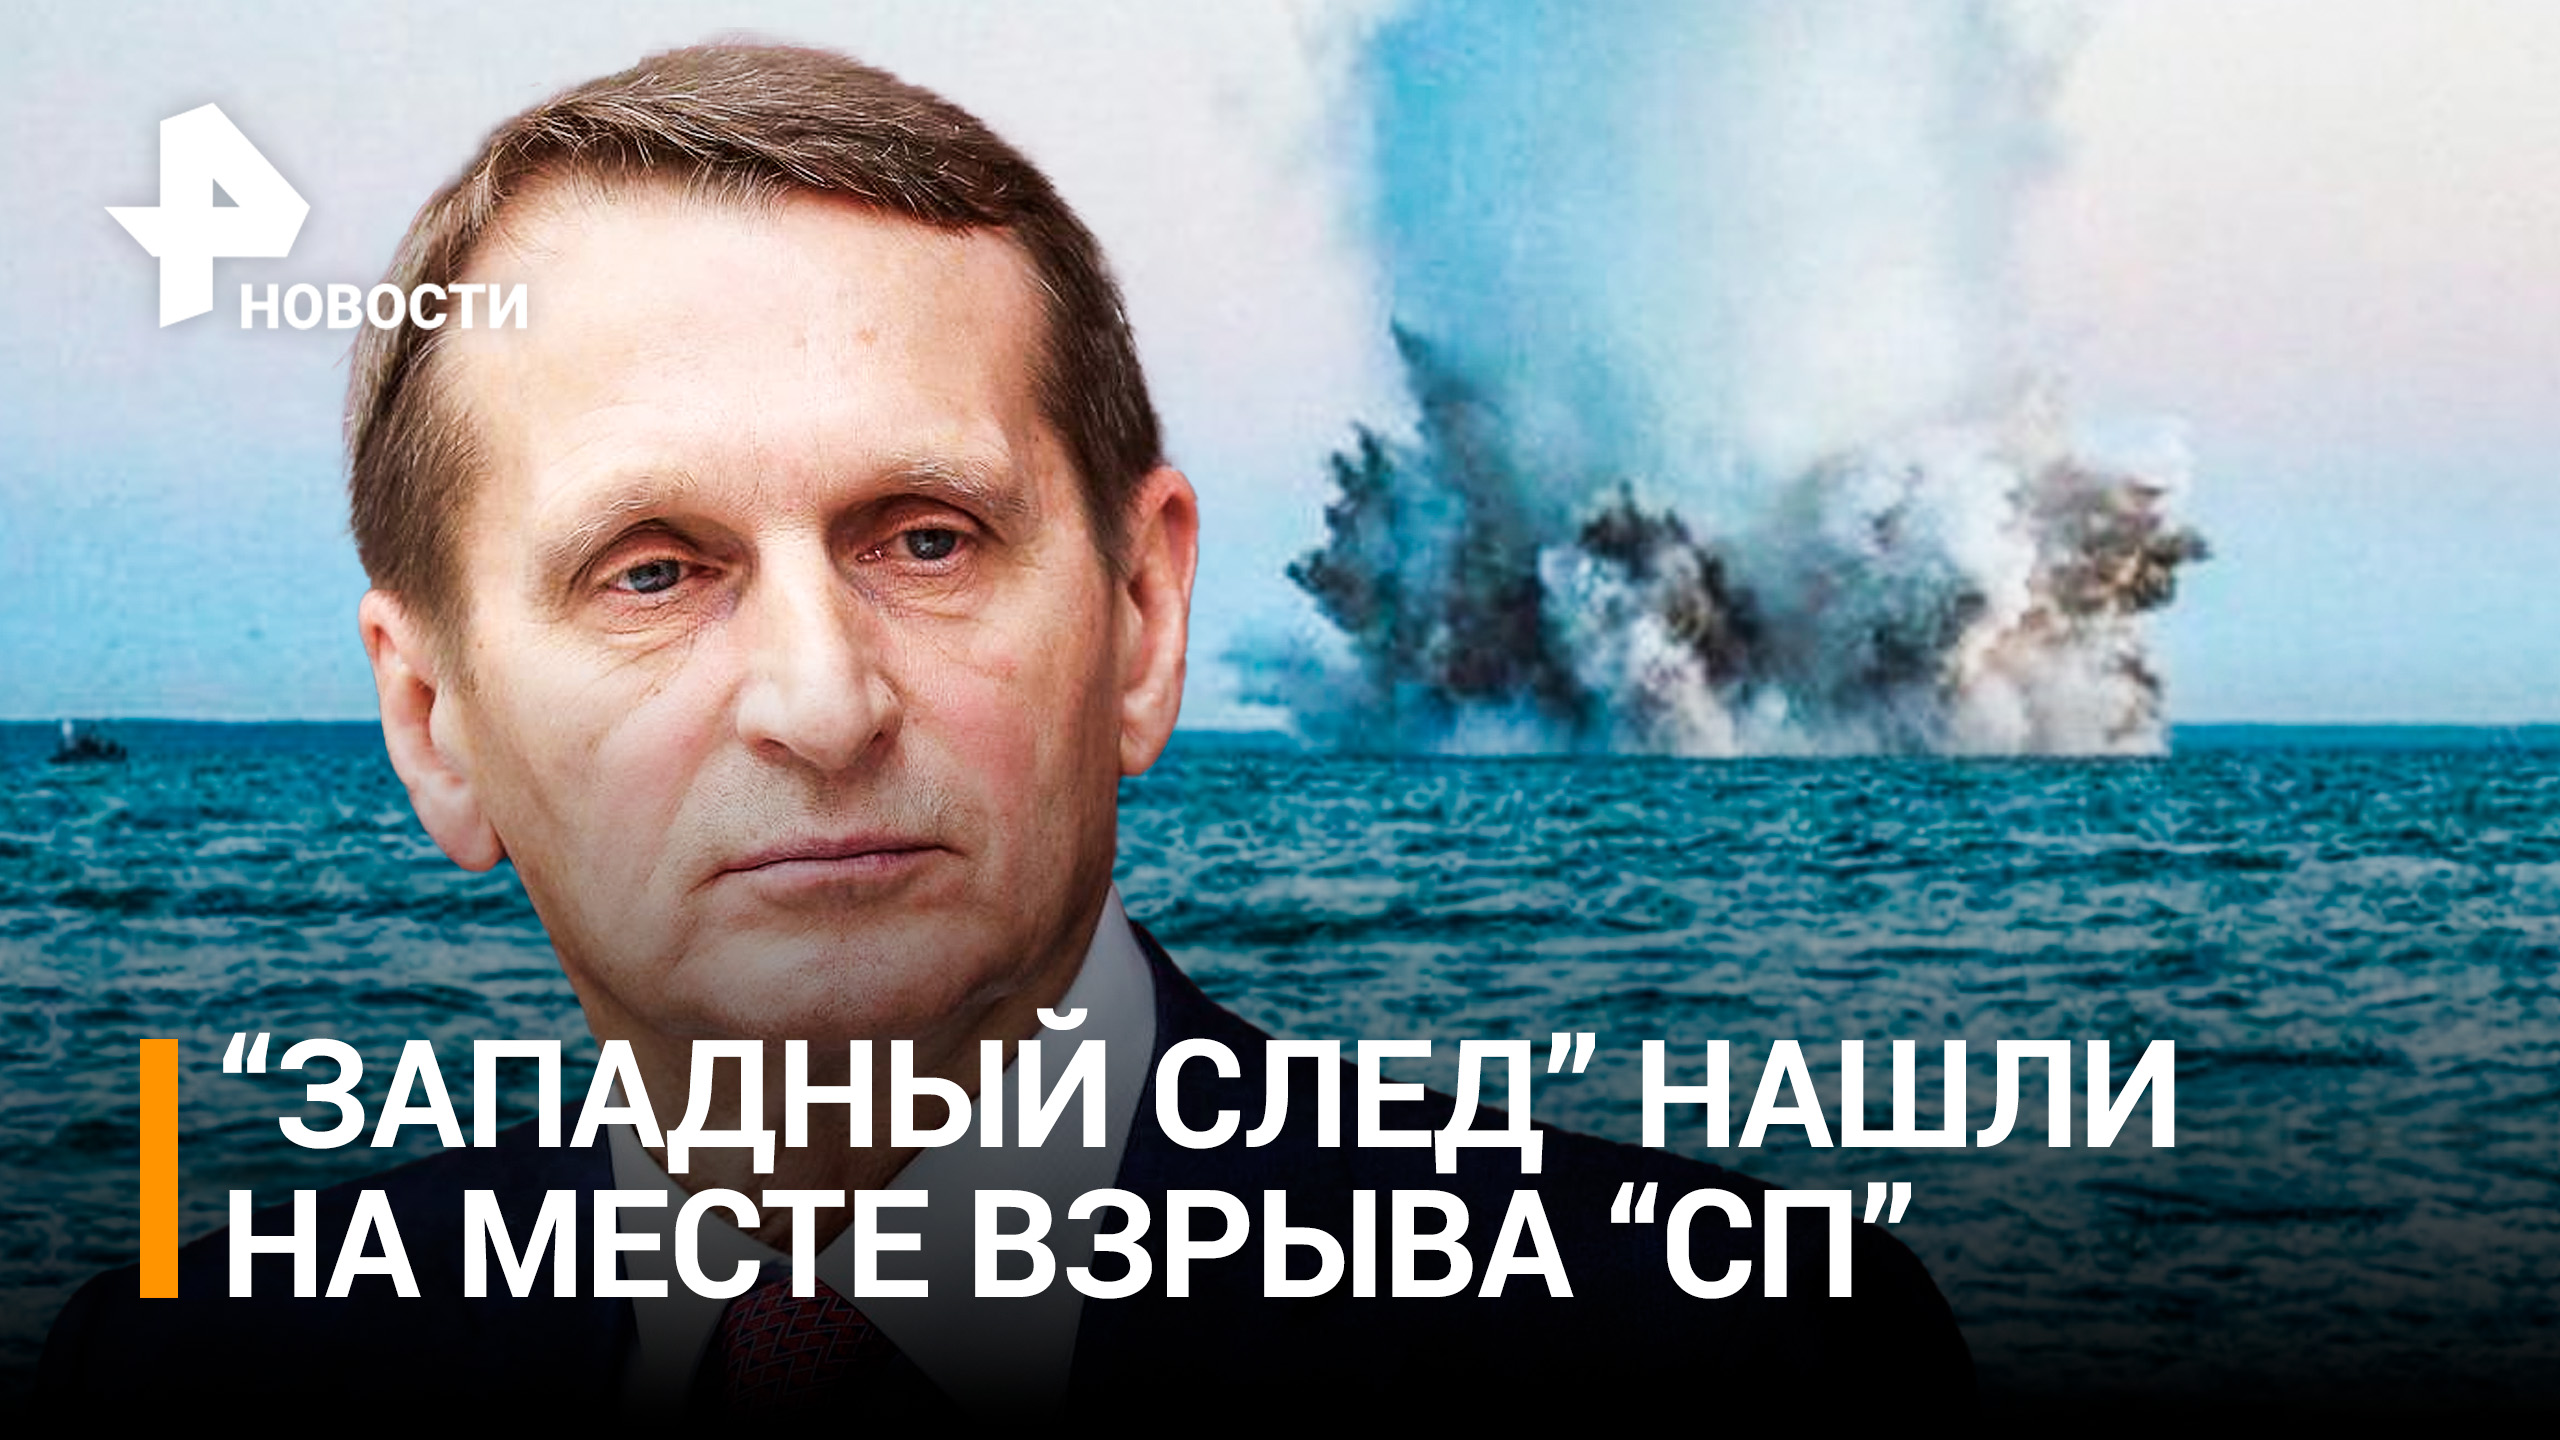 Нарышкин заявил о "западном следе" в диверсии на "Северных потоках" / РЕН Новости